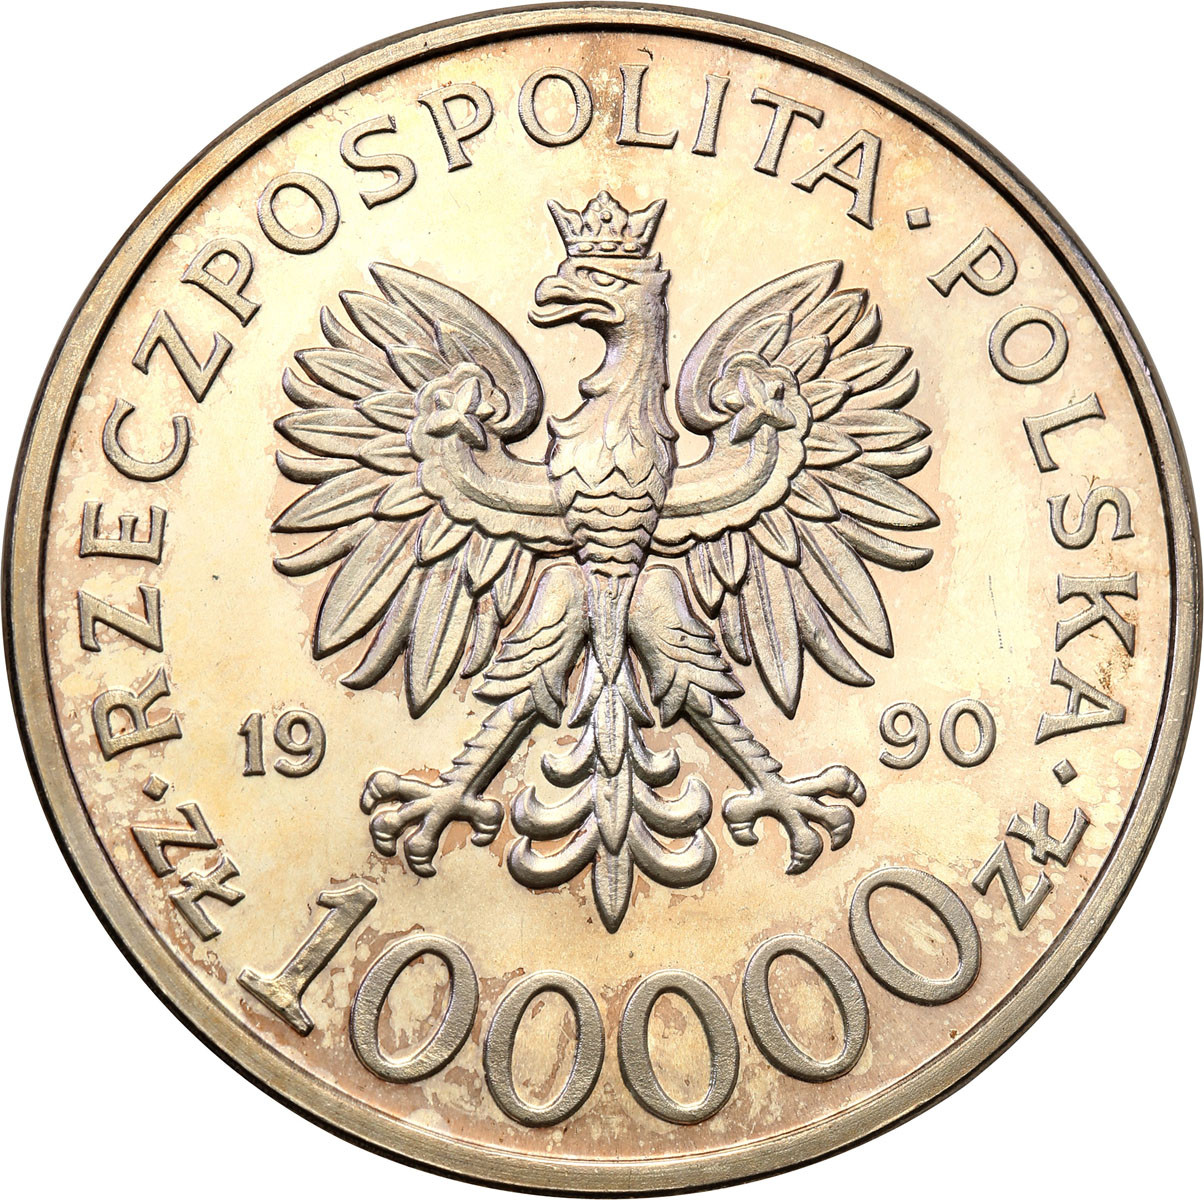 PRL. 100.000 złotych 1990 Solidarność typ A